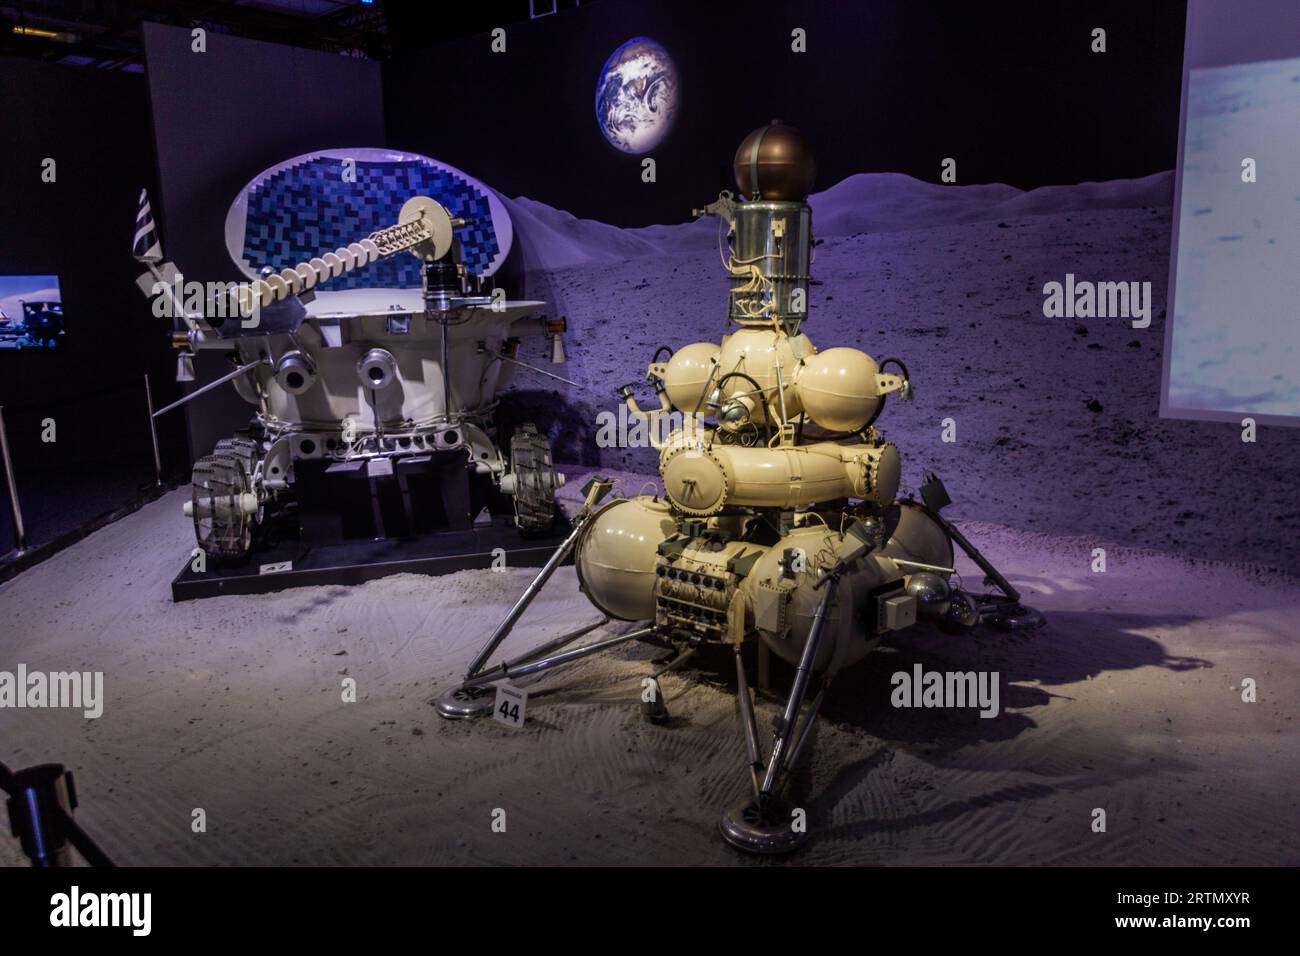 PRAGA, CECHIA - 10 LUGLIO 2020: Sonda Lunokhod Lunar rover e Luna 16 alla Cosmos Discovery Space Exhibition di Praga, Repubblica Ceca Foto Stock